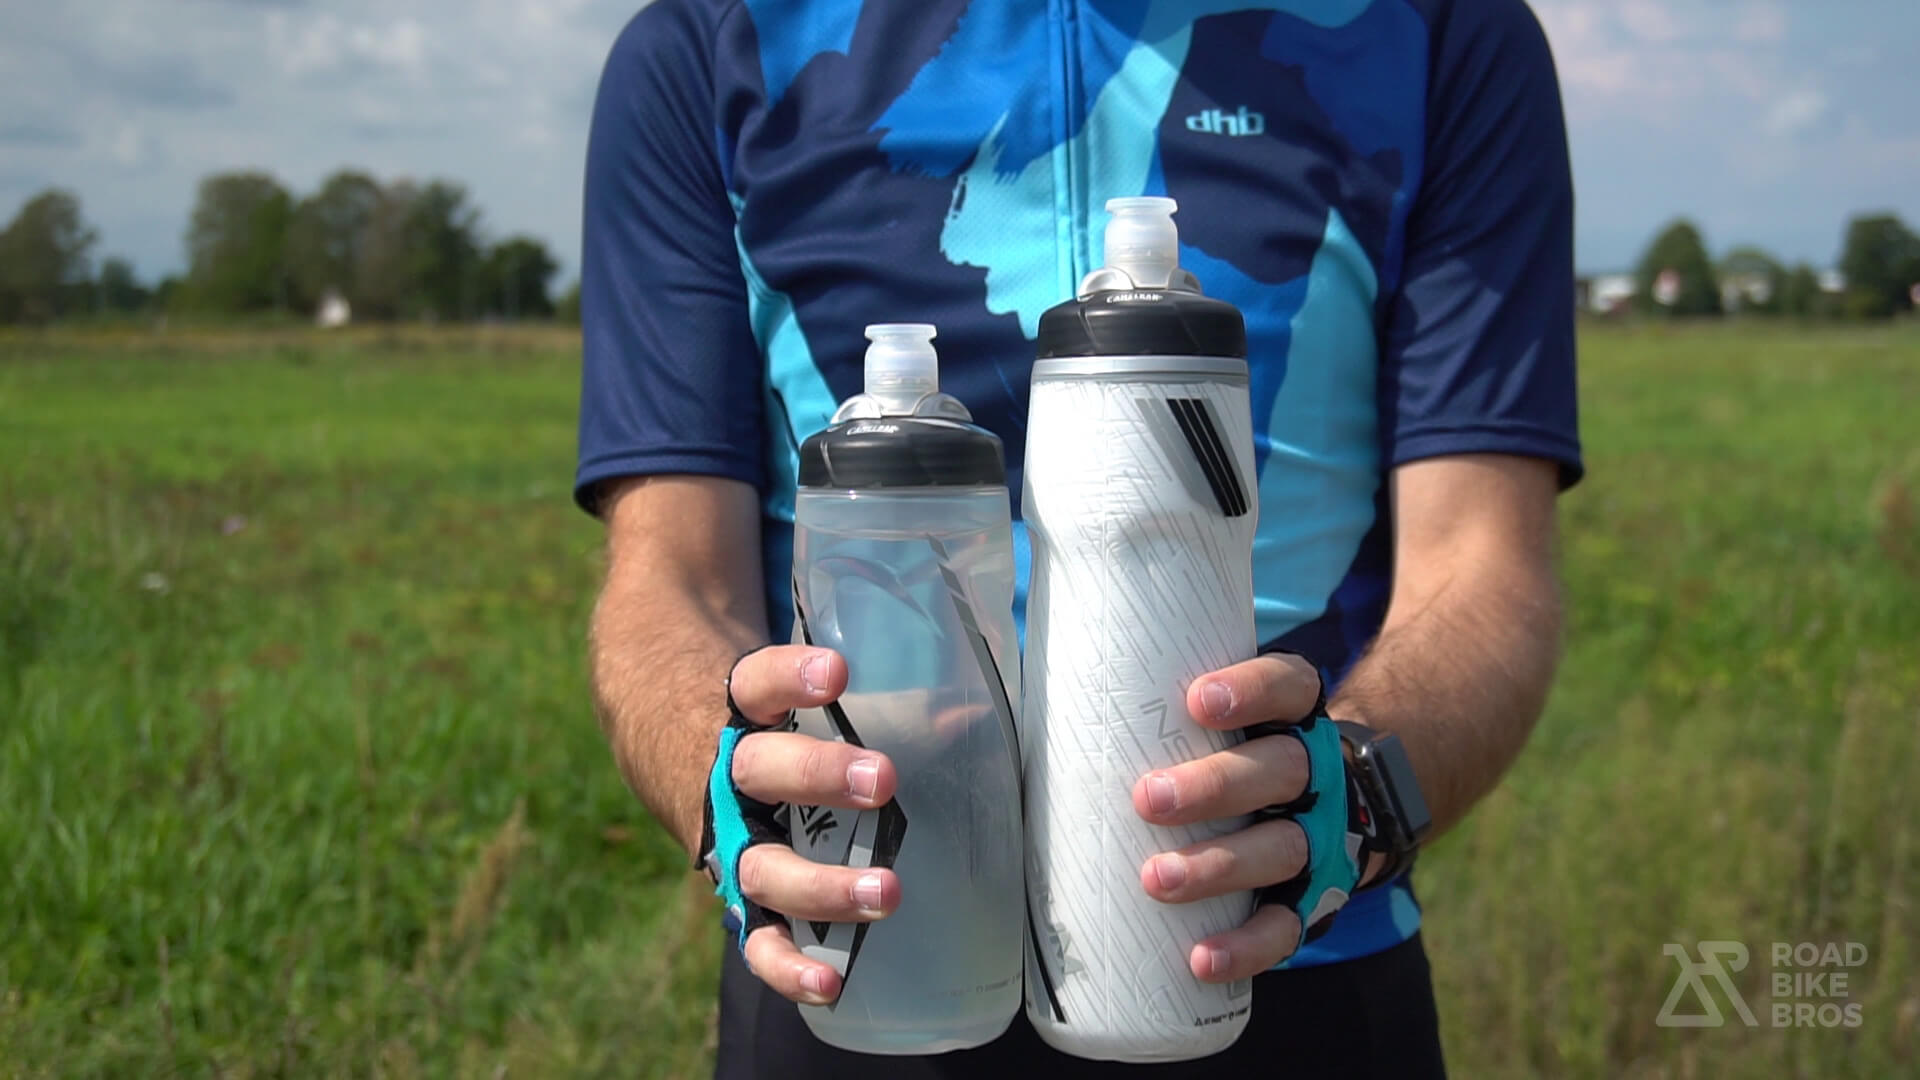 Best cycling water bottle